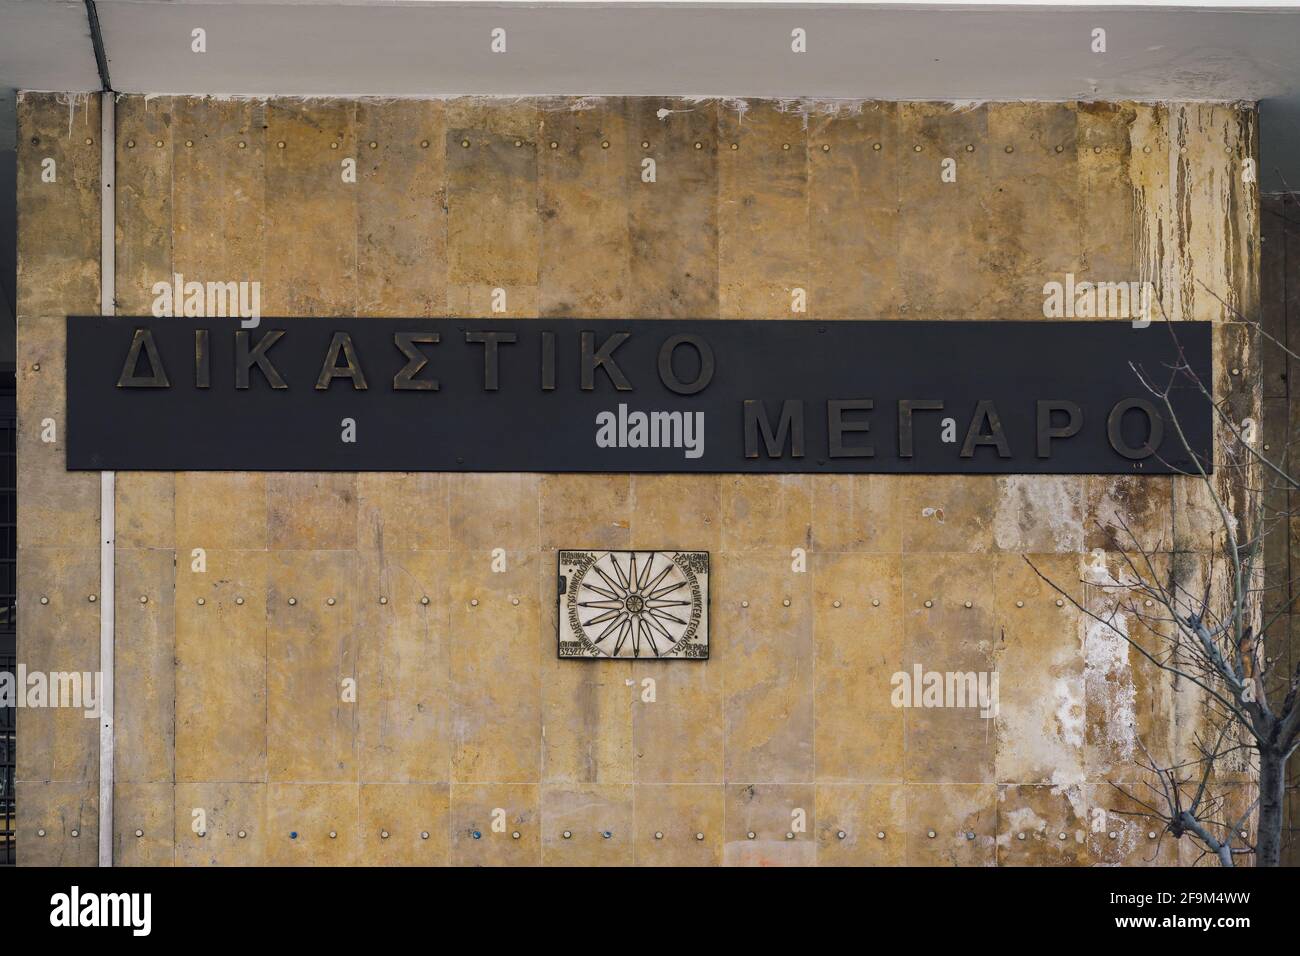 Salonicco, Grecia facciata del tribunale con segno ellenico. Vista esterna del giorno del dettaglio dell'ingresso del palazzo della giustizia. Foto Stock